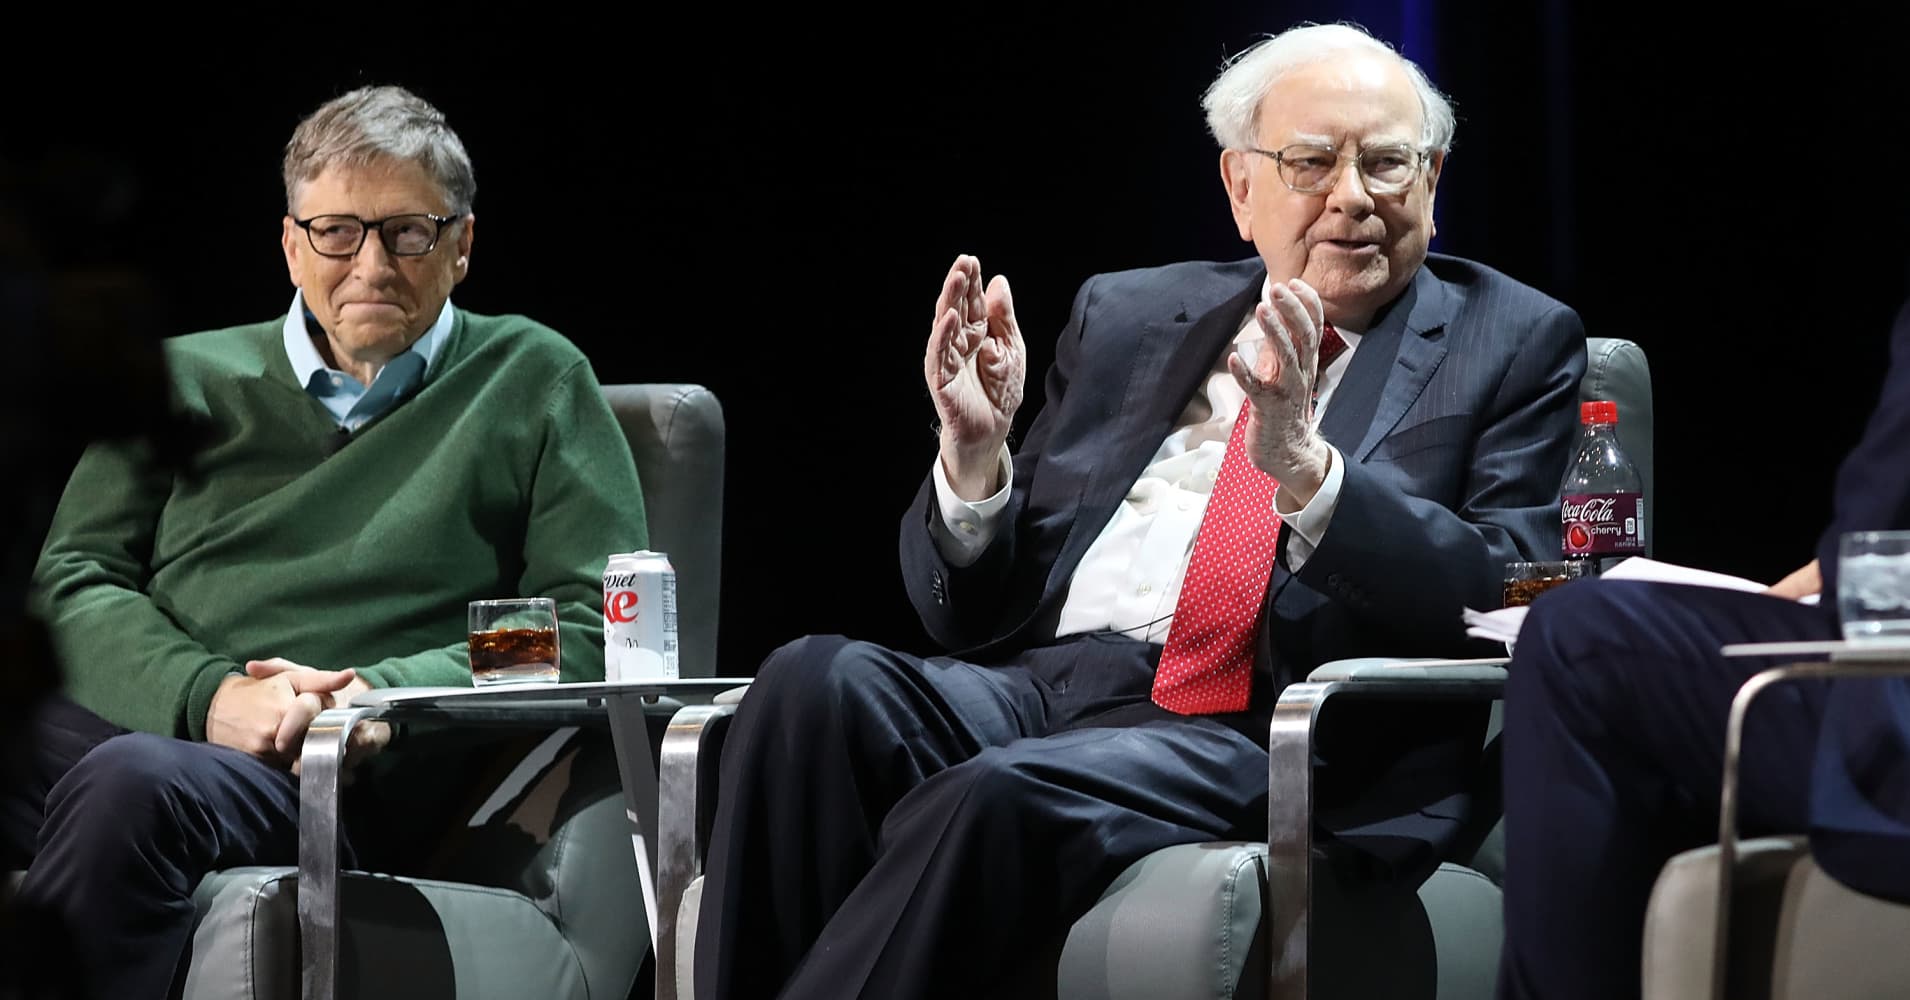 Longtime friends Warren Buffett and Bill Gates